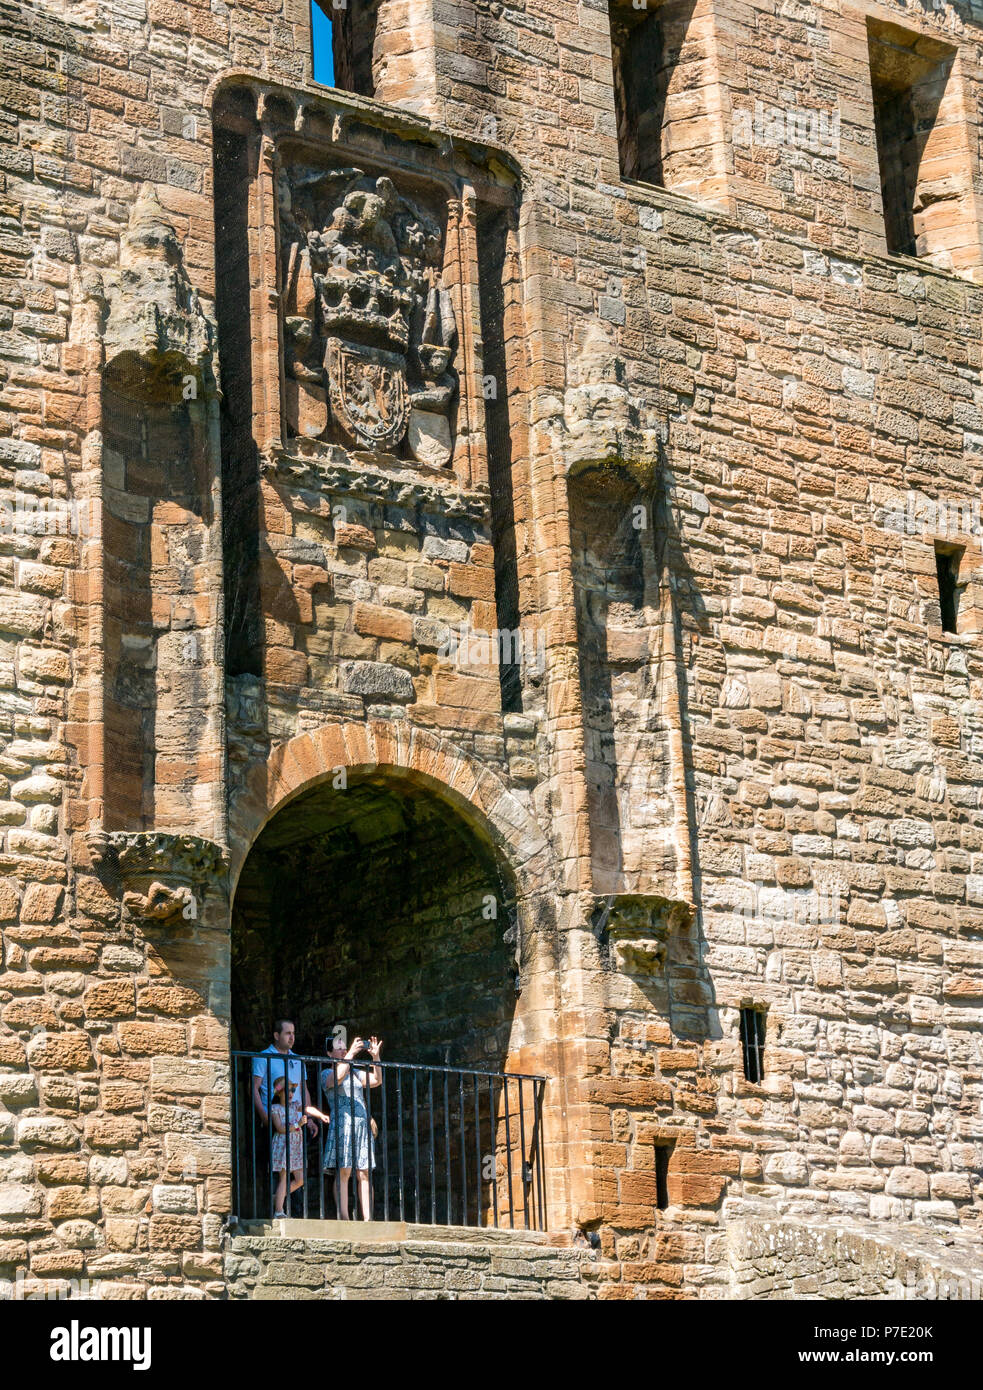 Visitatori incorniciato in ingresso in rovina che si affaccia su terreni con donna di scattare una foto, Linlithgow Palace, West Lothian, Scozia, Regno Unito Foto Stock